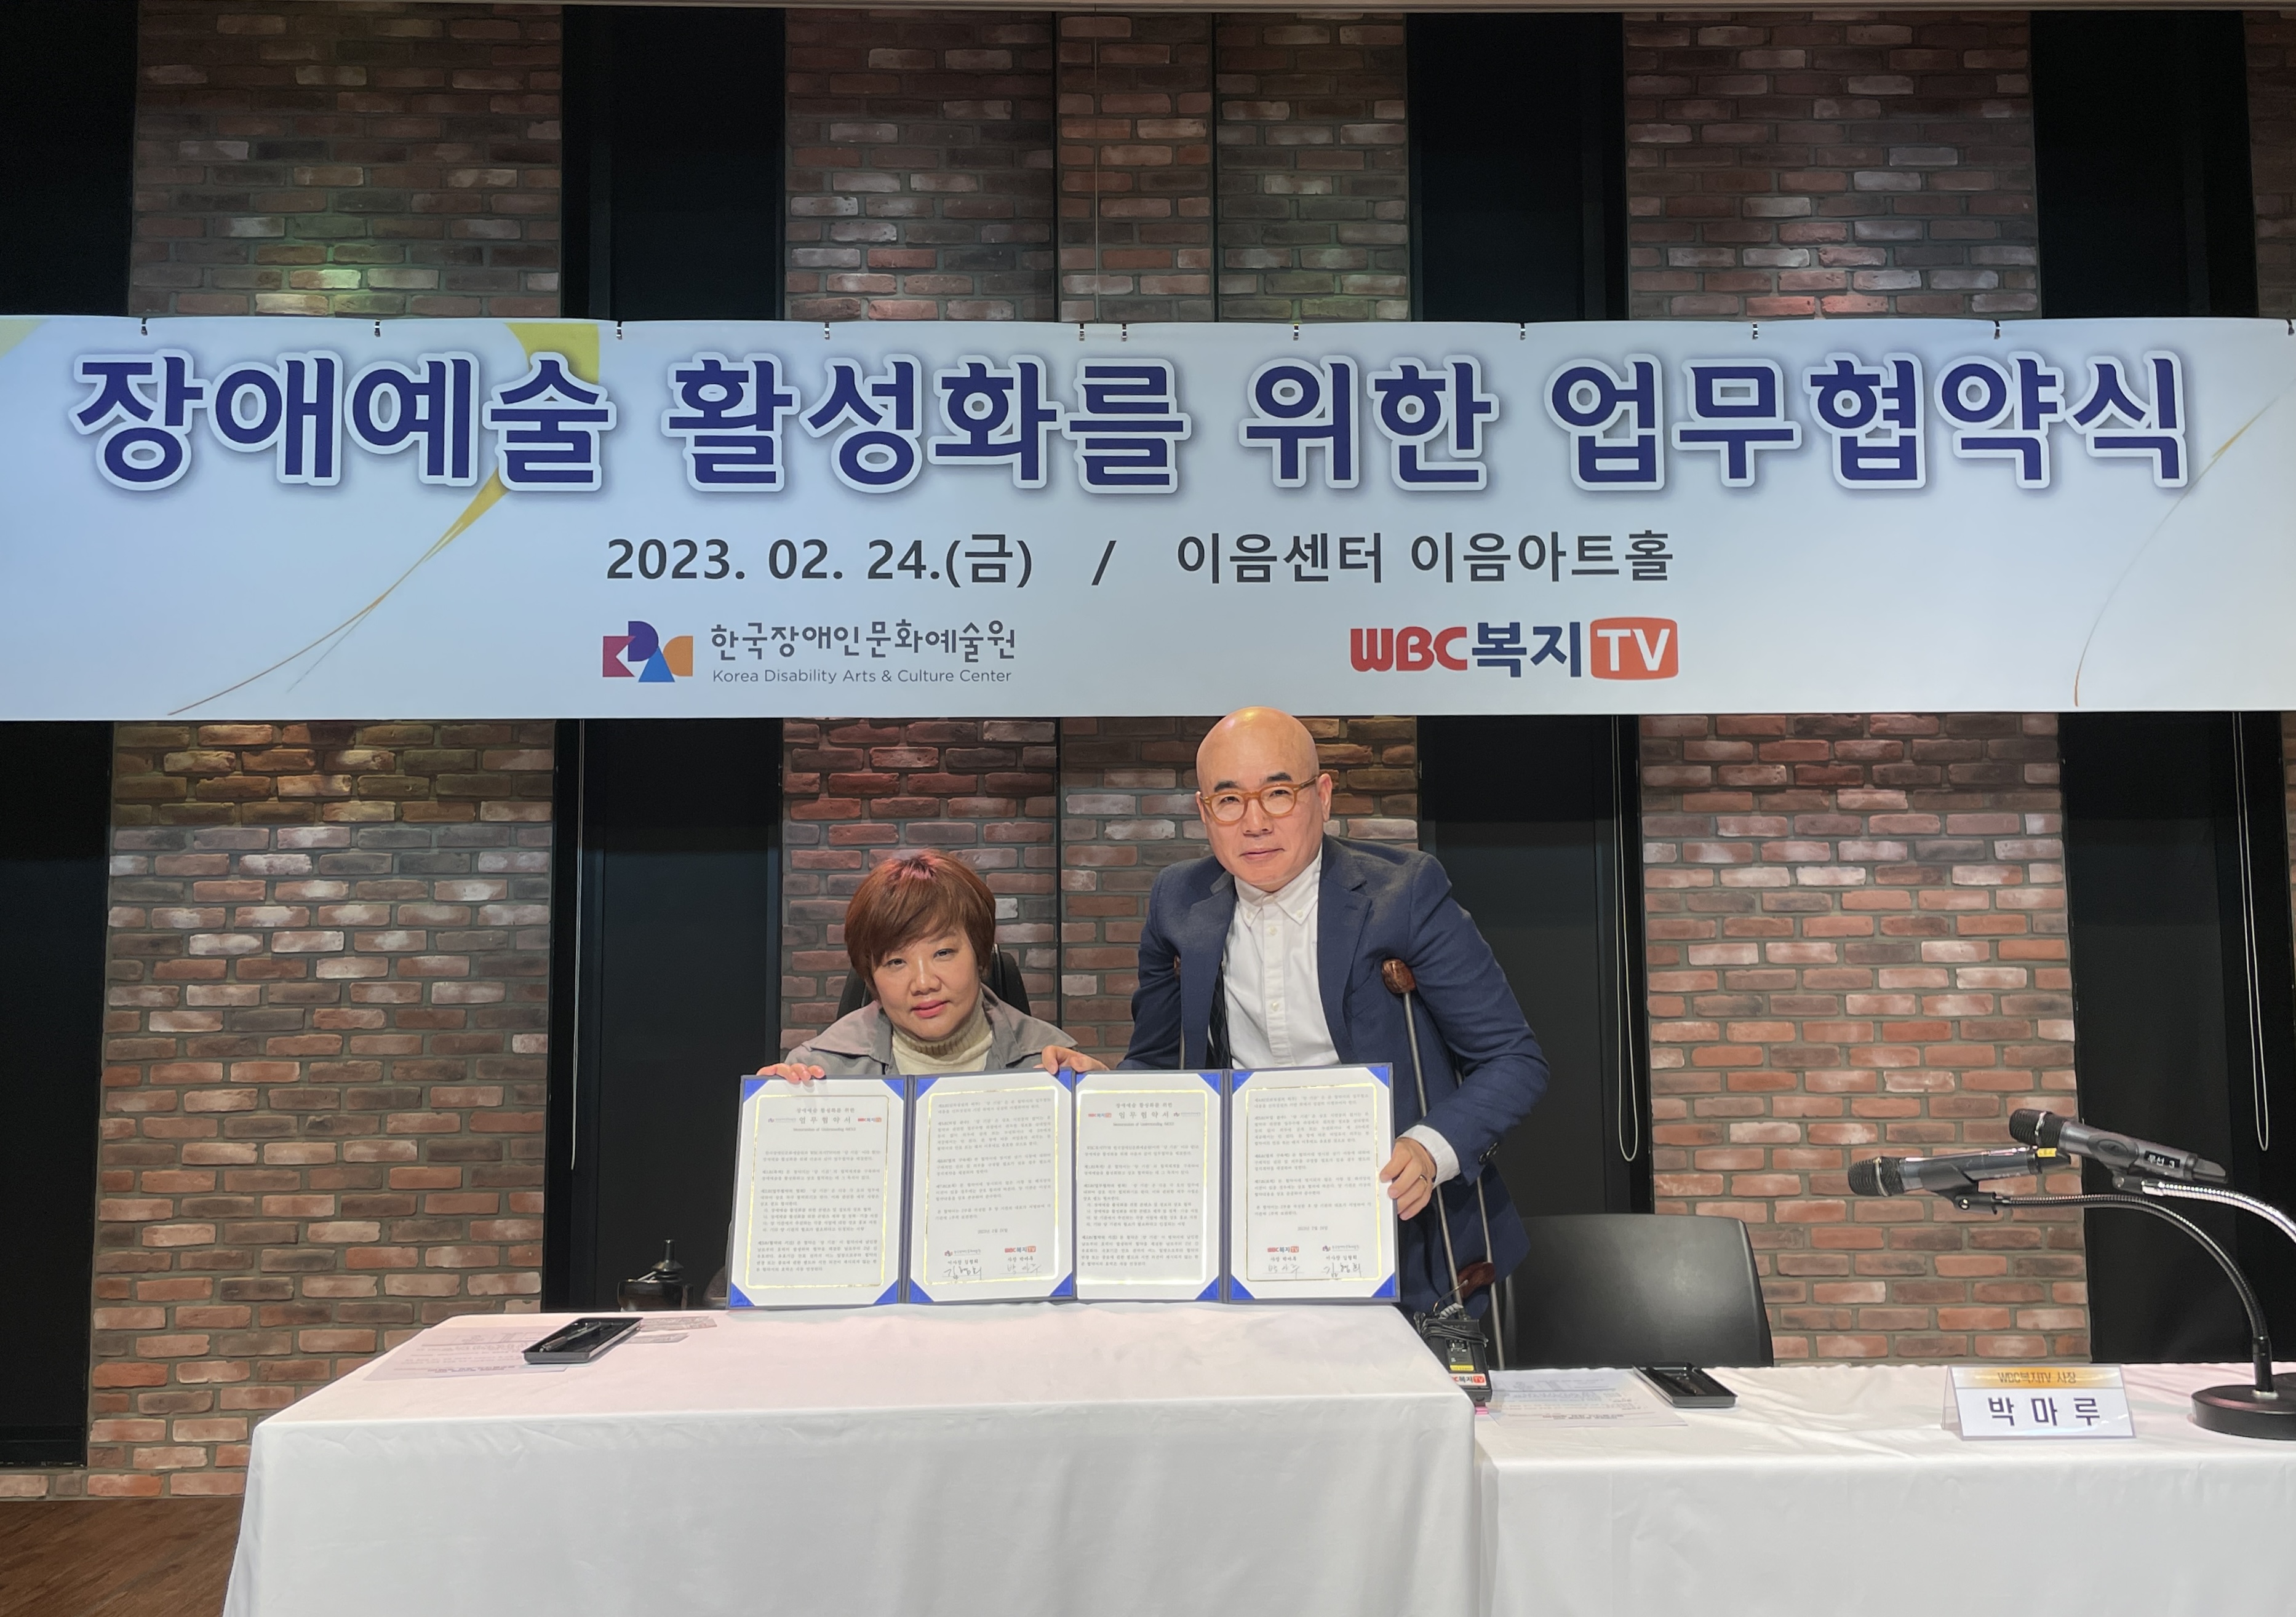 [보도자료] 한국장애인문화예술원-WBC복지TV 장애예술 활성화를 위한 업무협약 체결